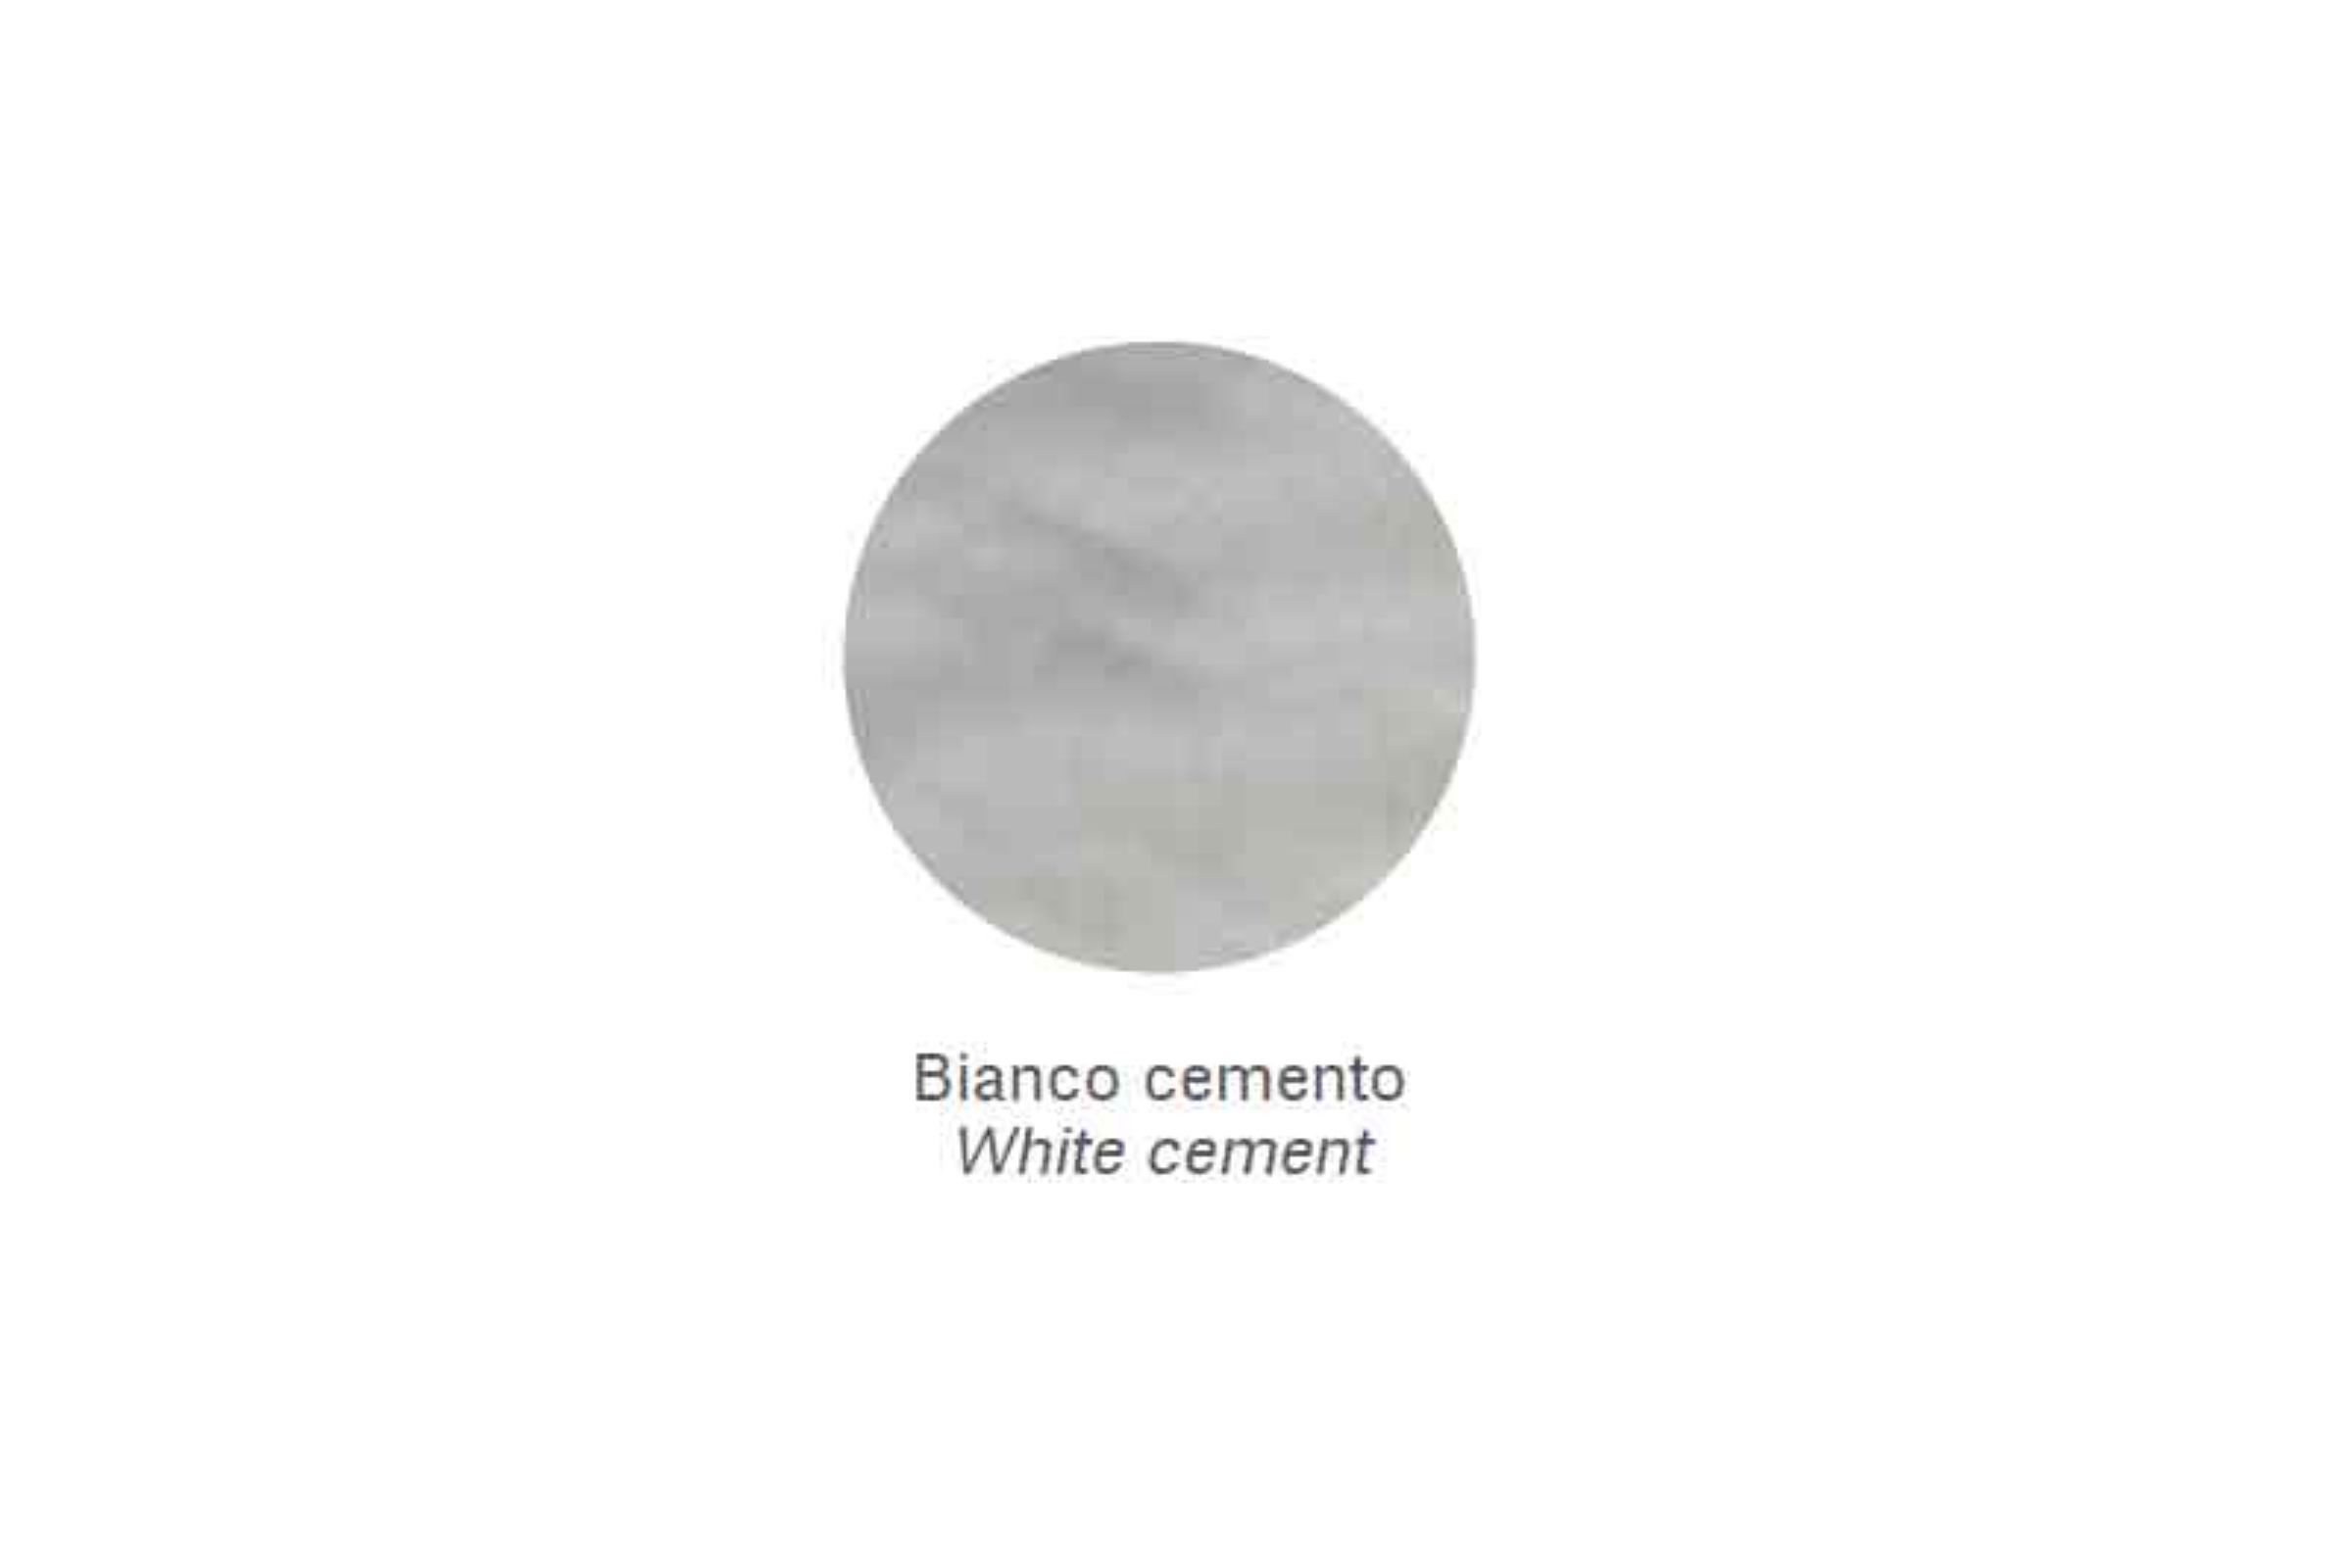 Sgabello con inserti in ottone cromato (anche per interno doccia) Zen - Sgabello con inserti in ottone cromato Zen Bianco cemento